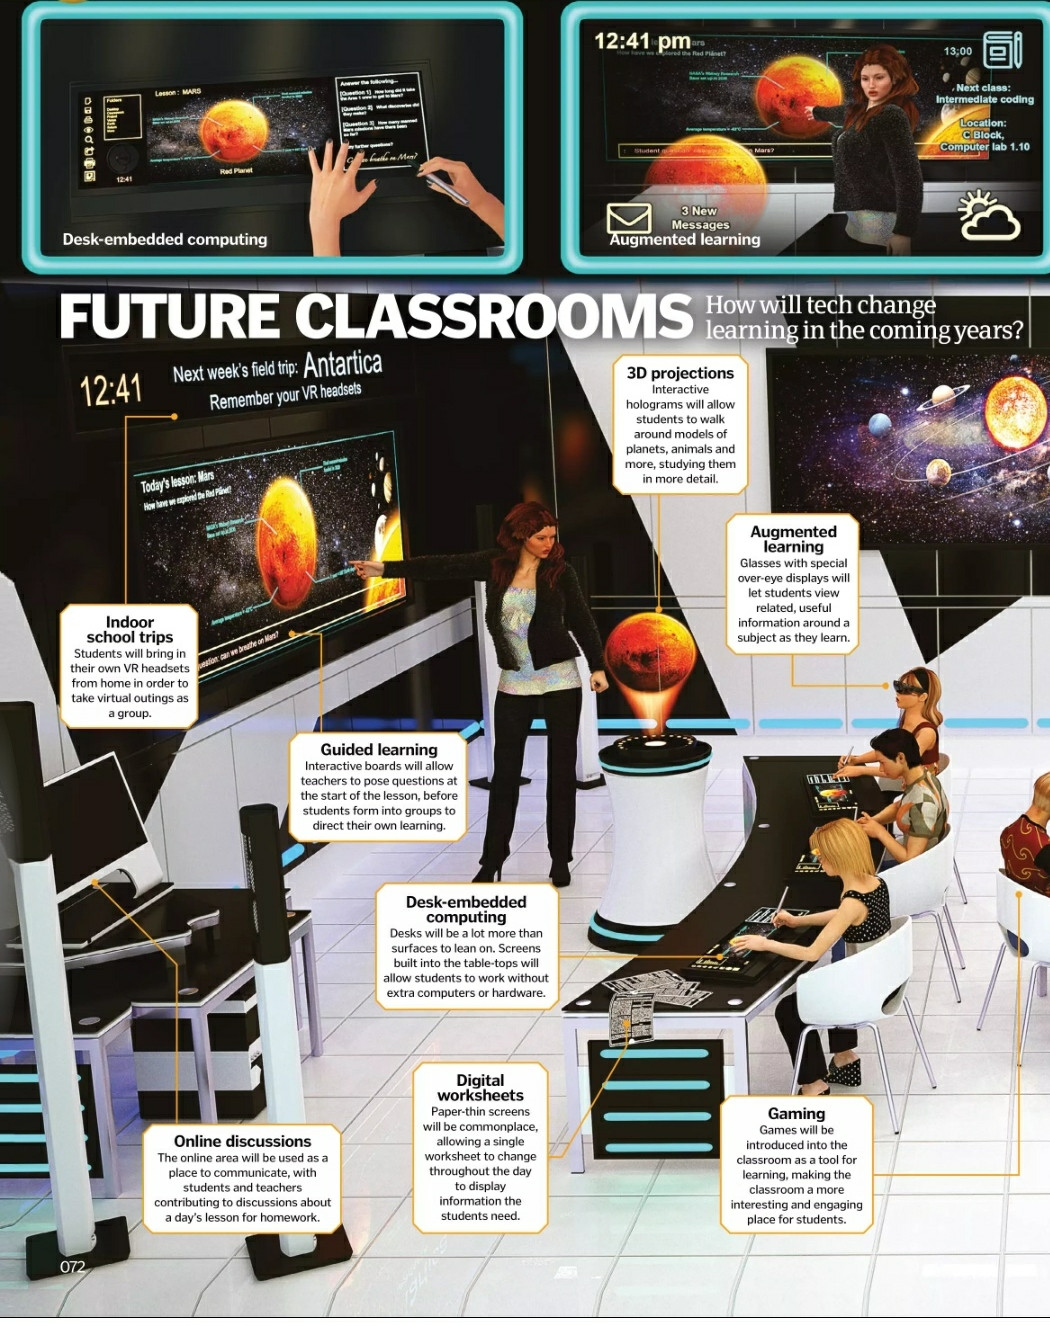 Будущие классные комнаты: Как&nbsp;техника изменит образование в&nbsp;ближайшие годы?